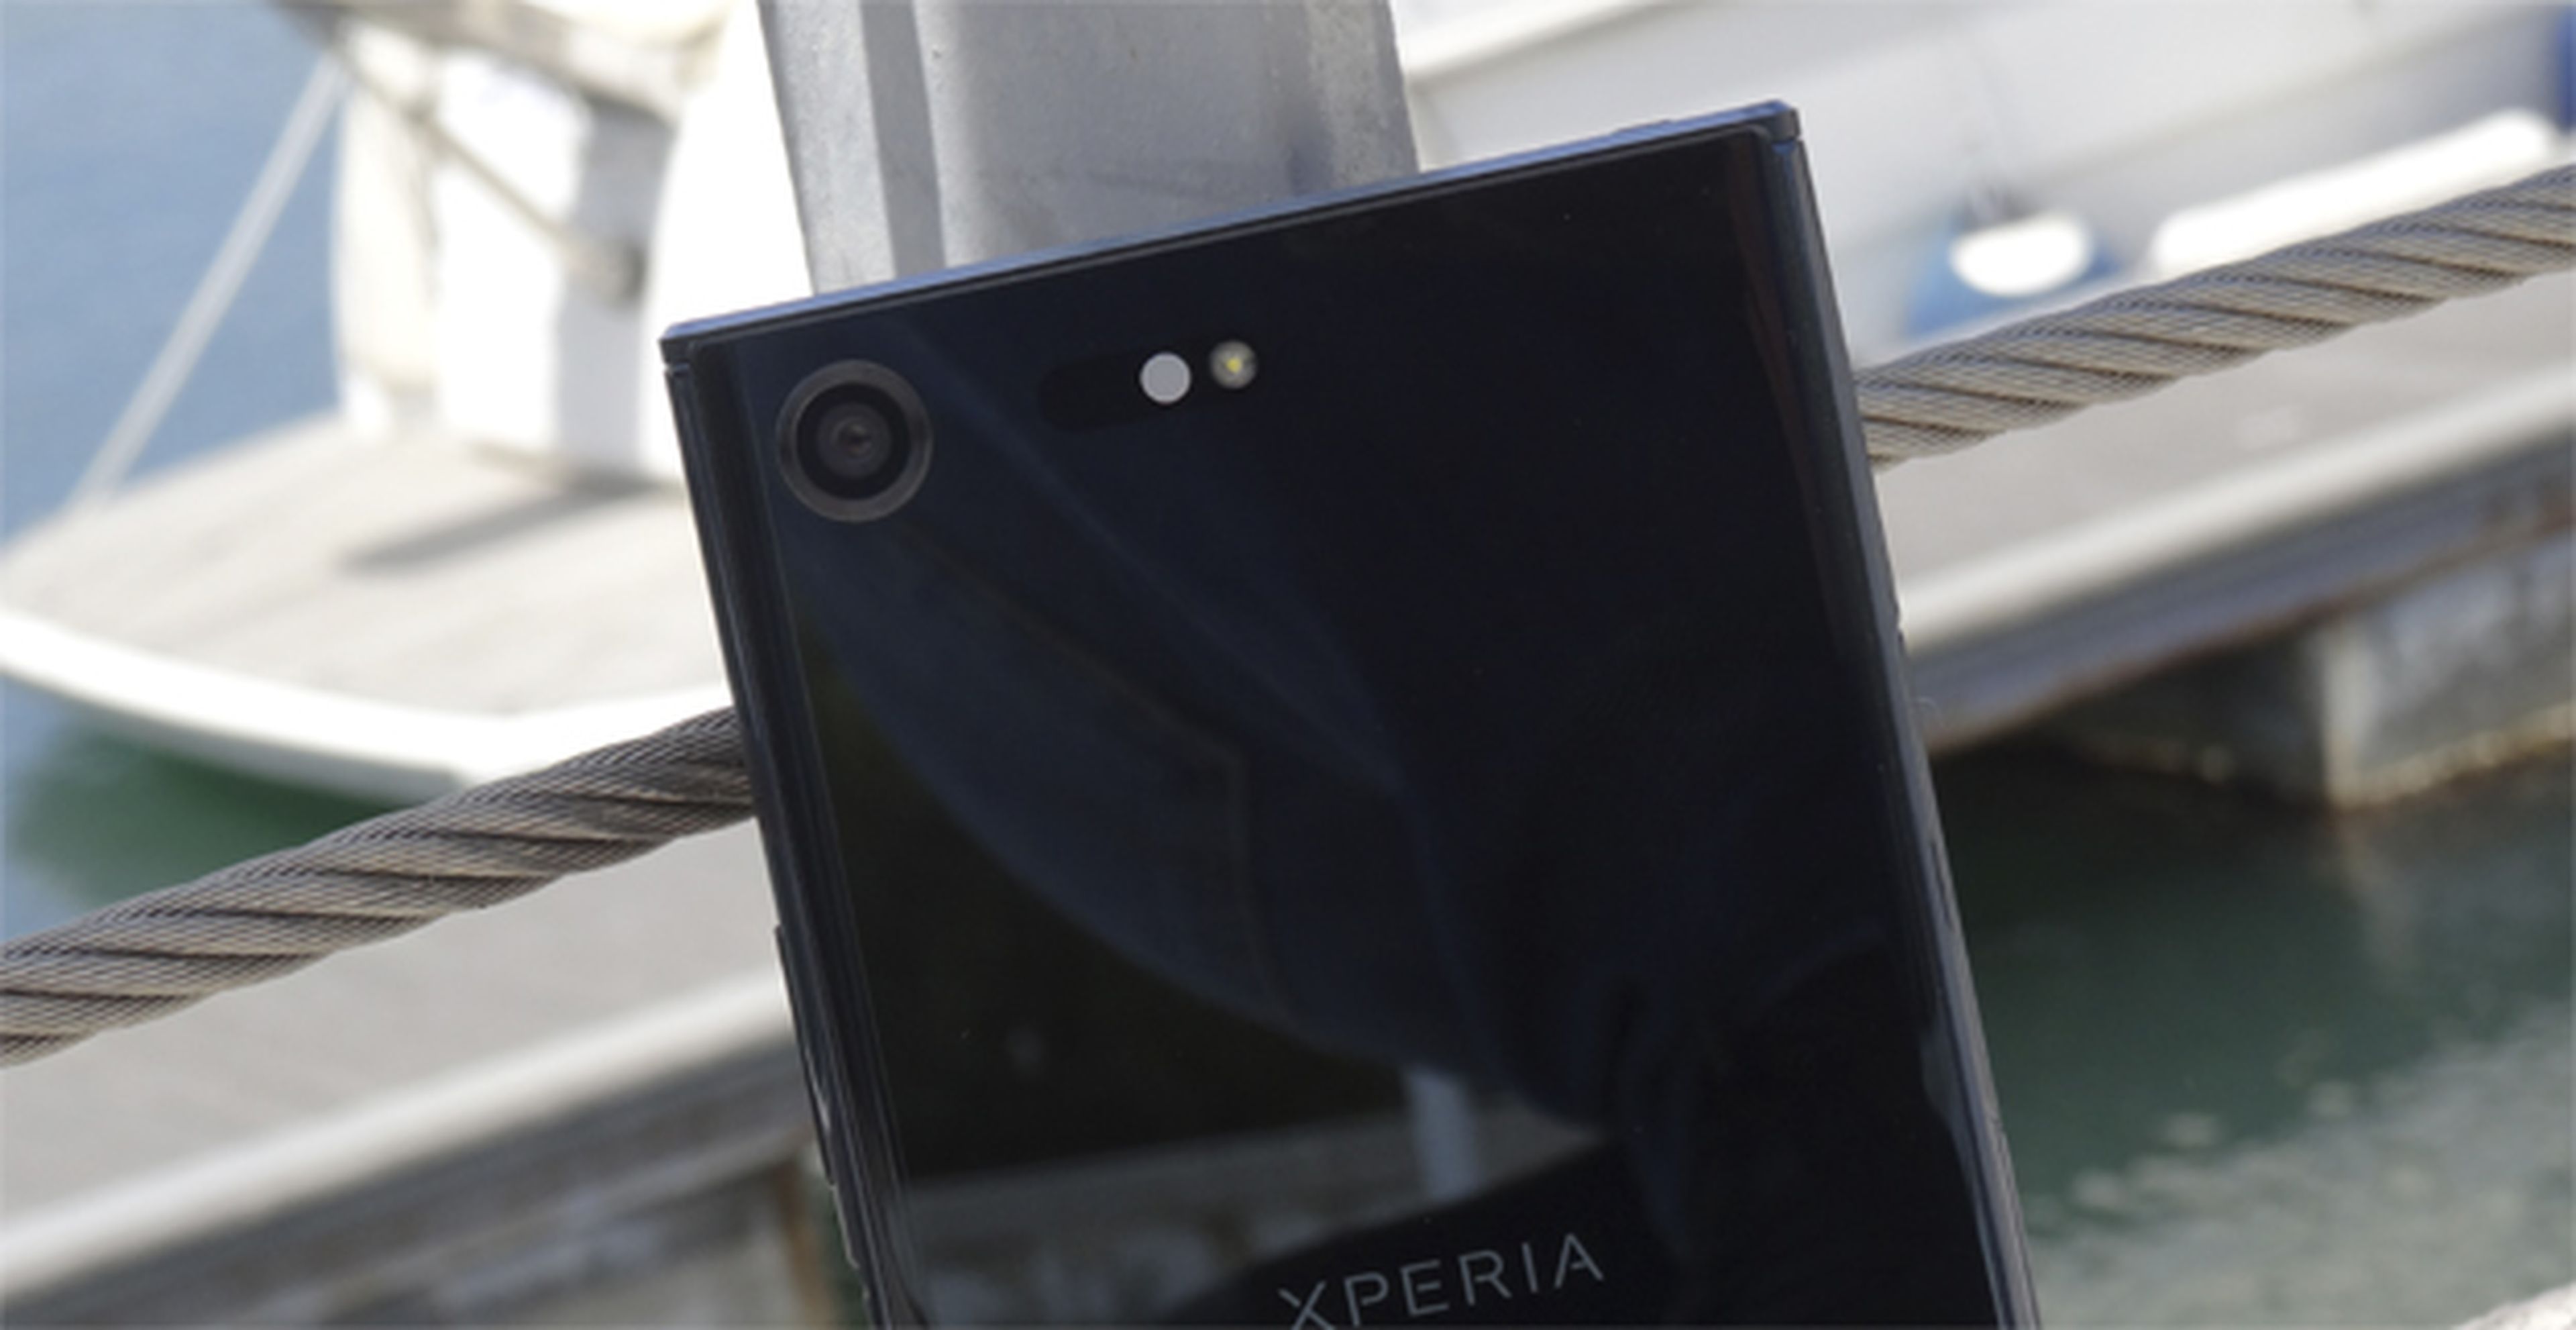 Hasta aquí llega nuestra toma de contacto con la cámara del Xperia XZ Premium